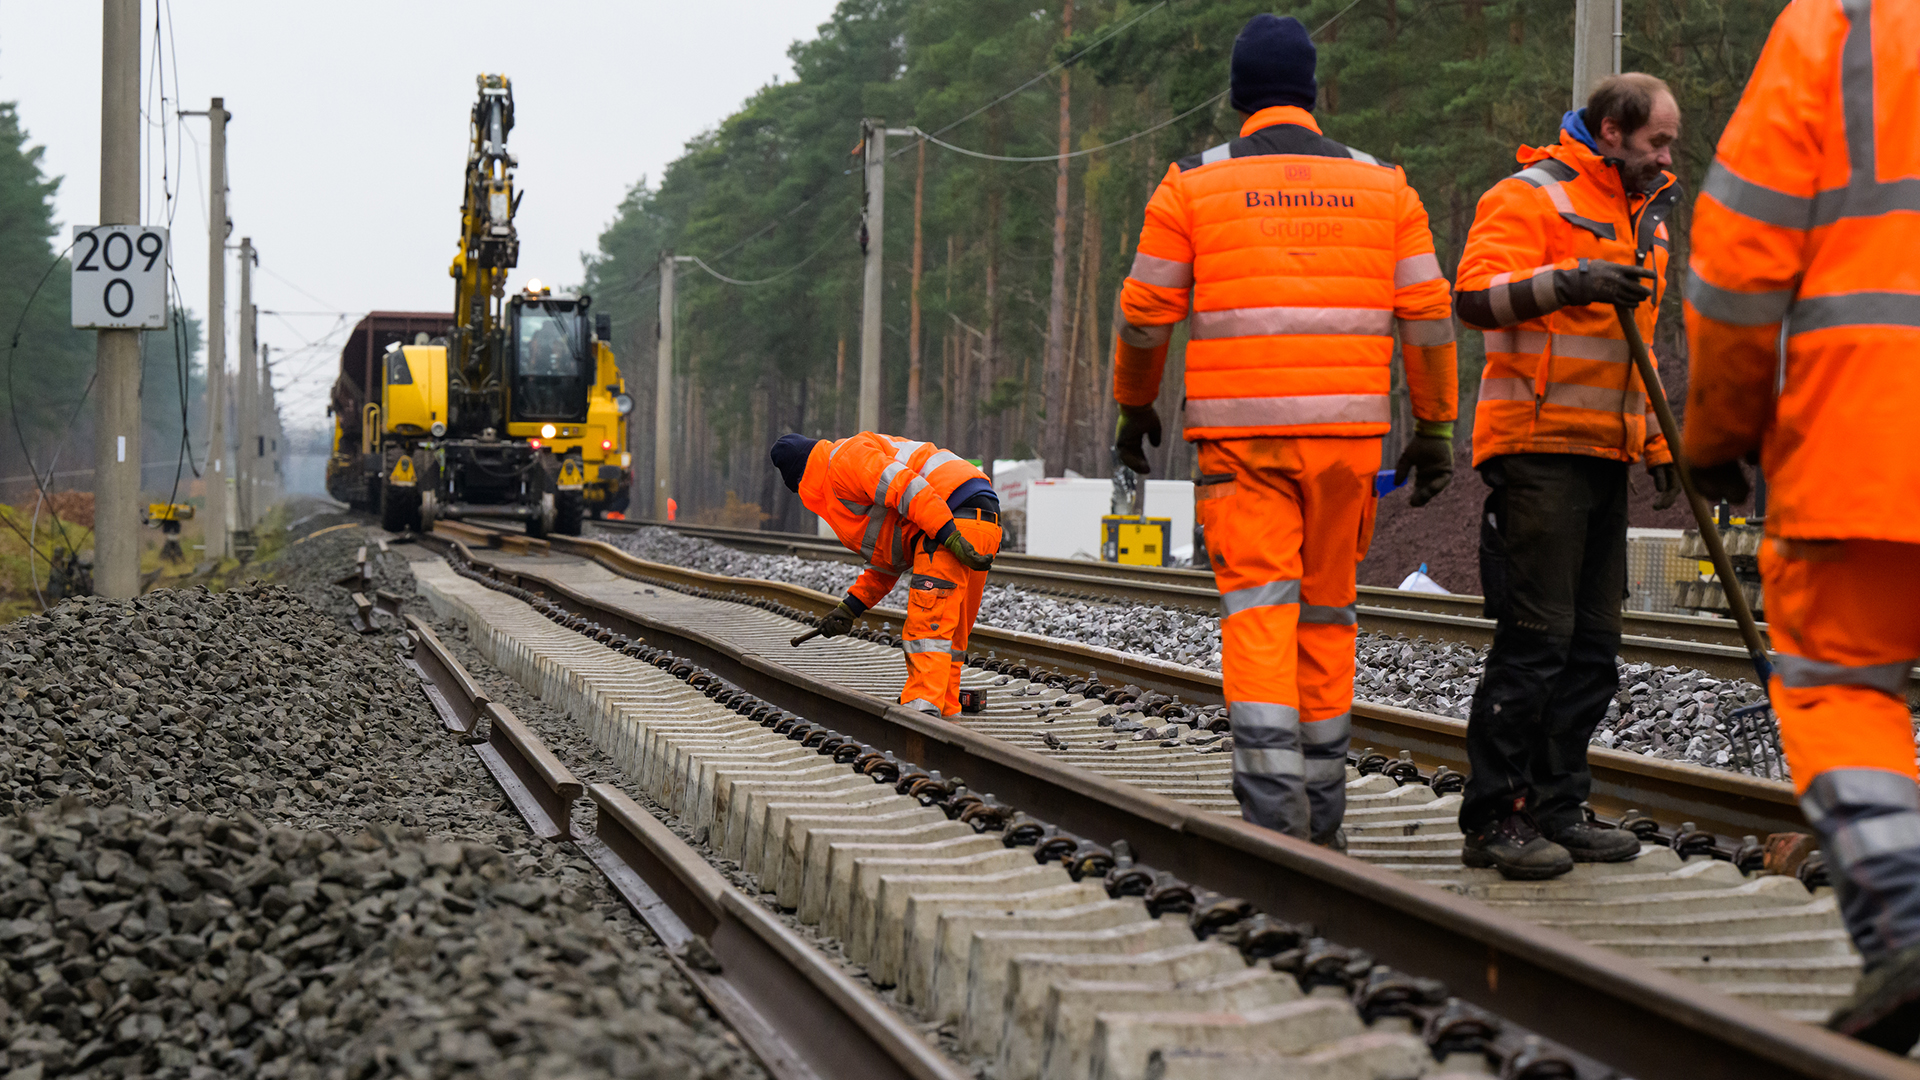 Zustand des Bahn-Netzes – Vorstand fordert “radikalen Kurswechsel”